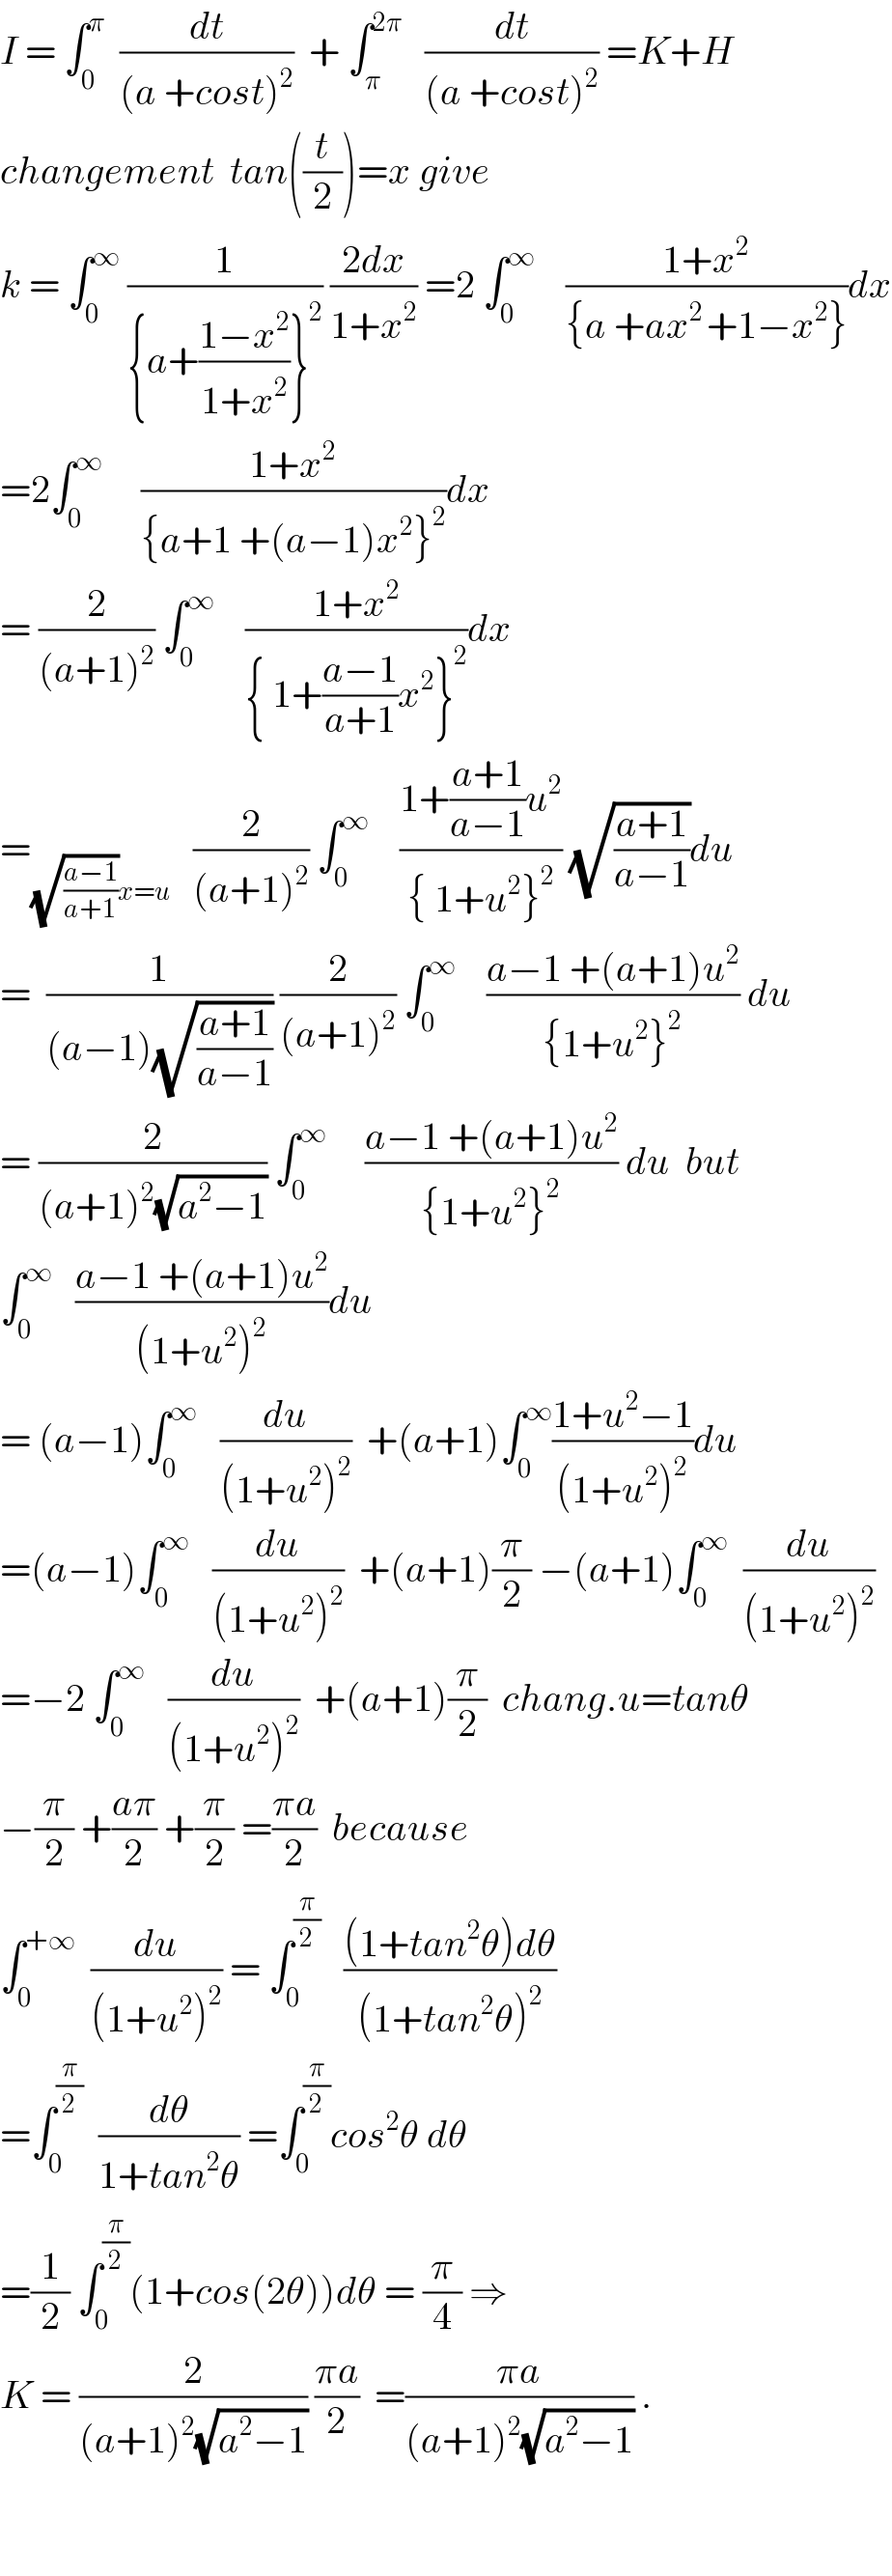 I = ∫_0 ^π   (dt/((a +cost)^2 ))  + ∫_π ^(2π)    (dt/((a +cost)^2 )) =K+H  changement  tan((t/2))=x give   k = ∫_0 ^∞  (1/({a+((1−x^2 )/(1+x^2 ))}^2 )) ((2dx)/(1+x^2 )) =2 ∫_0 ^∞     ((1+x^2 )/({a +ax^(2 ) +1−x^2 }))dx  =2∫_0 ^∞      ((1+x^2 )/({a+1 +(a−1)x^2 }^2 ))dx  = (2/((a+1)^2 )) ∫_0 ^∞     ((1+x^2 )/({ 1+((a−1)/(a+1))x^2 }^2 ))dx  =_((√((a−1)/(a+1)))x=u)    (2/((a+1)^2 )) ∫_0 ^∞     ((1+((a+1)/(a−1))u^2 )/({ 1+u^2 }^2 )) (√((a+1)/(a−1)))du  =  (1/((a−1)(√((a+1)/(a−1))))) (2/((a+1)^2 )) ∫_0 ^∞     ((a−1 +(a+1)u^2 )/({1+u^2 }^2 )) du  = (2/((a+1)^2 (√(a^2 −1)))) ∫_0 ^∞      ((a−1 +(a+1)u^2 )/({1+u^2 }^2 )) du  but  ∫_0 ^∞    ((a−1 +(a+1)u^2 )/((1+u^2 )^2 ))du  = (a−1)∫_0 ^∞    (du/((1+u^2 )^2 ))  +(a+1)∫_0 ^∞ ((1+u^2 −1)/((1+u^2 )^2 ))du  =(a−1)∫_0 ^∞    (du/((1+u^2 )^2 ))  +(a+1)(π/2) −(a+1)∫_0 ^∞   (du/((1+u^2 )^2 ))  =−2 ∫_0 ^∞    (du/((1+u^2 )^2 ))  +(a+1)(π/2)  chang.u=tanθ  −(π/2) +((aπ)/2) +(π/2) =((πa)/2)  because  ∫_0 ^(+∞)   (du/((1+u^2 )^2 )) = ∫_0 ^(π/2)    (((1+tan^2 θ)dθ)/((1+tan^2 θ)^2 ))  =∫_0 ^(π/2)   (dθ/(1+tan^2 θ)) =∫_0 ^(π/2) cos^2 θ dθ  =(1/2) ∫_0 ^(π/2) (1+cos(2θ))dθ = (π/4) ⇒  K = (2/((a+1)^2 (√(a^2 −1)))) ((πa)/2)  =((πa)/((a+1)^2 (√(a^2 −1)))) .      